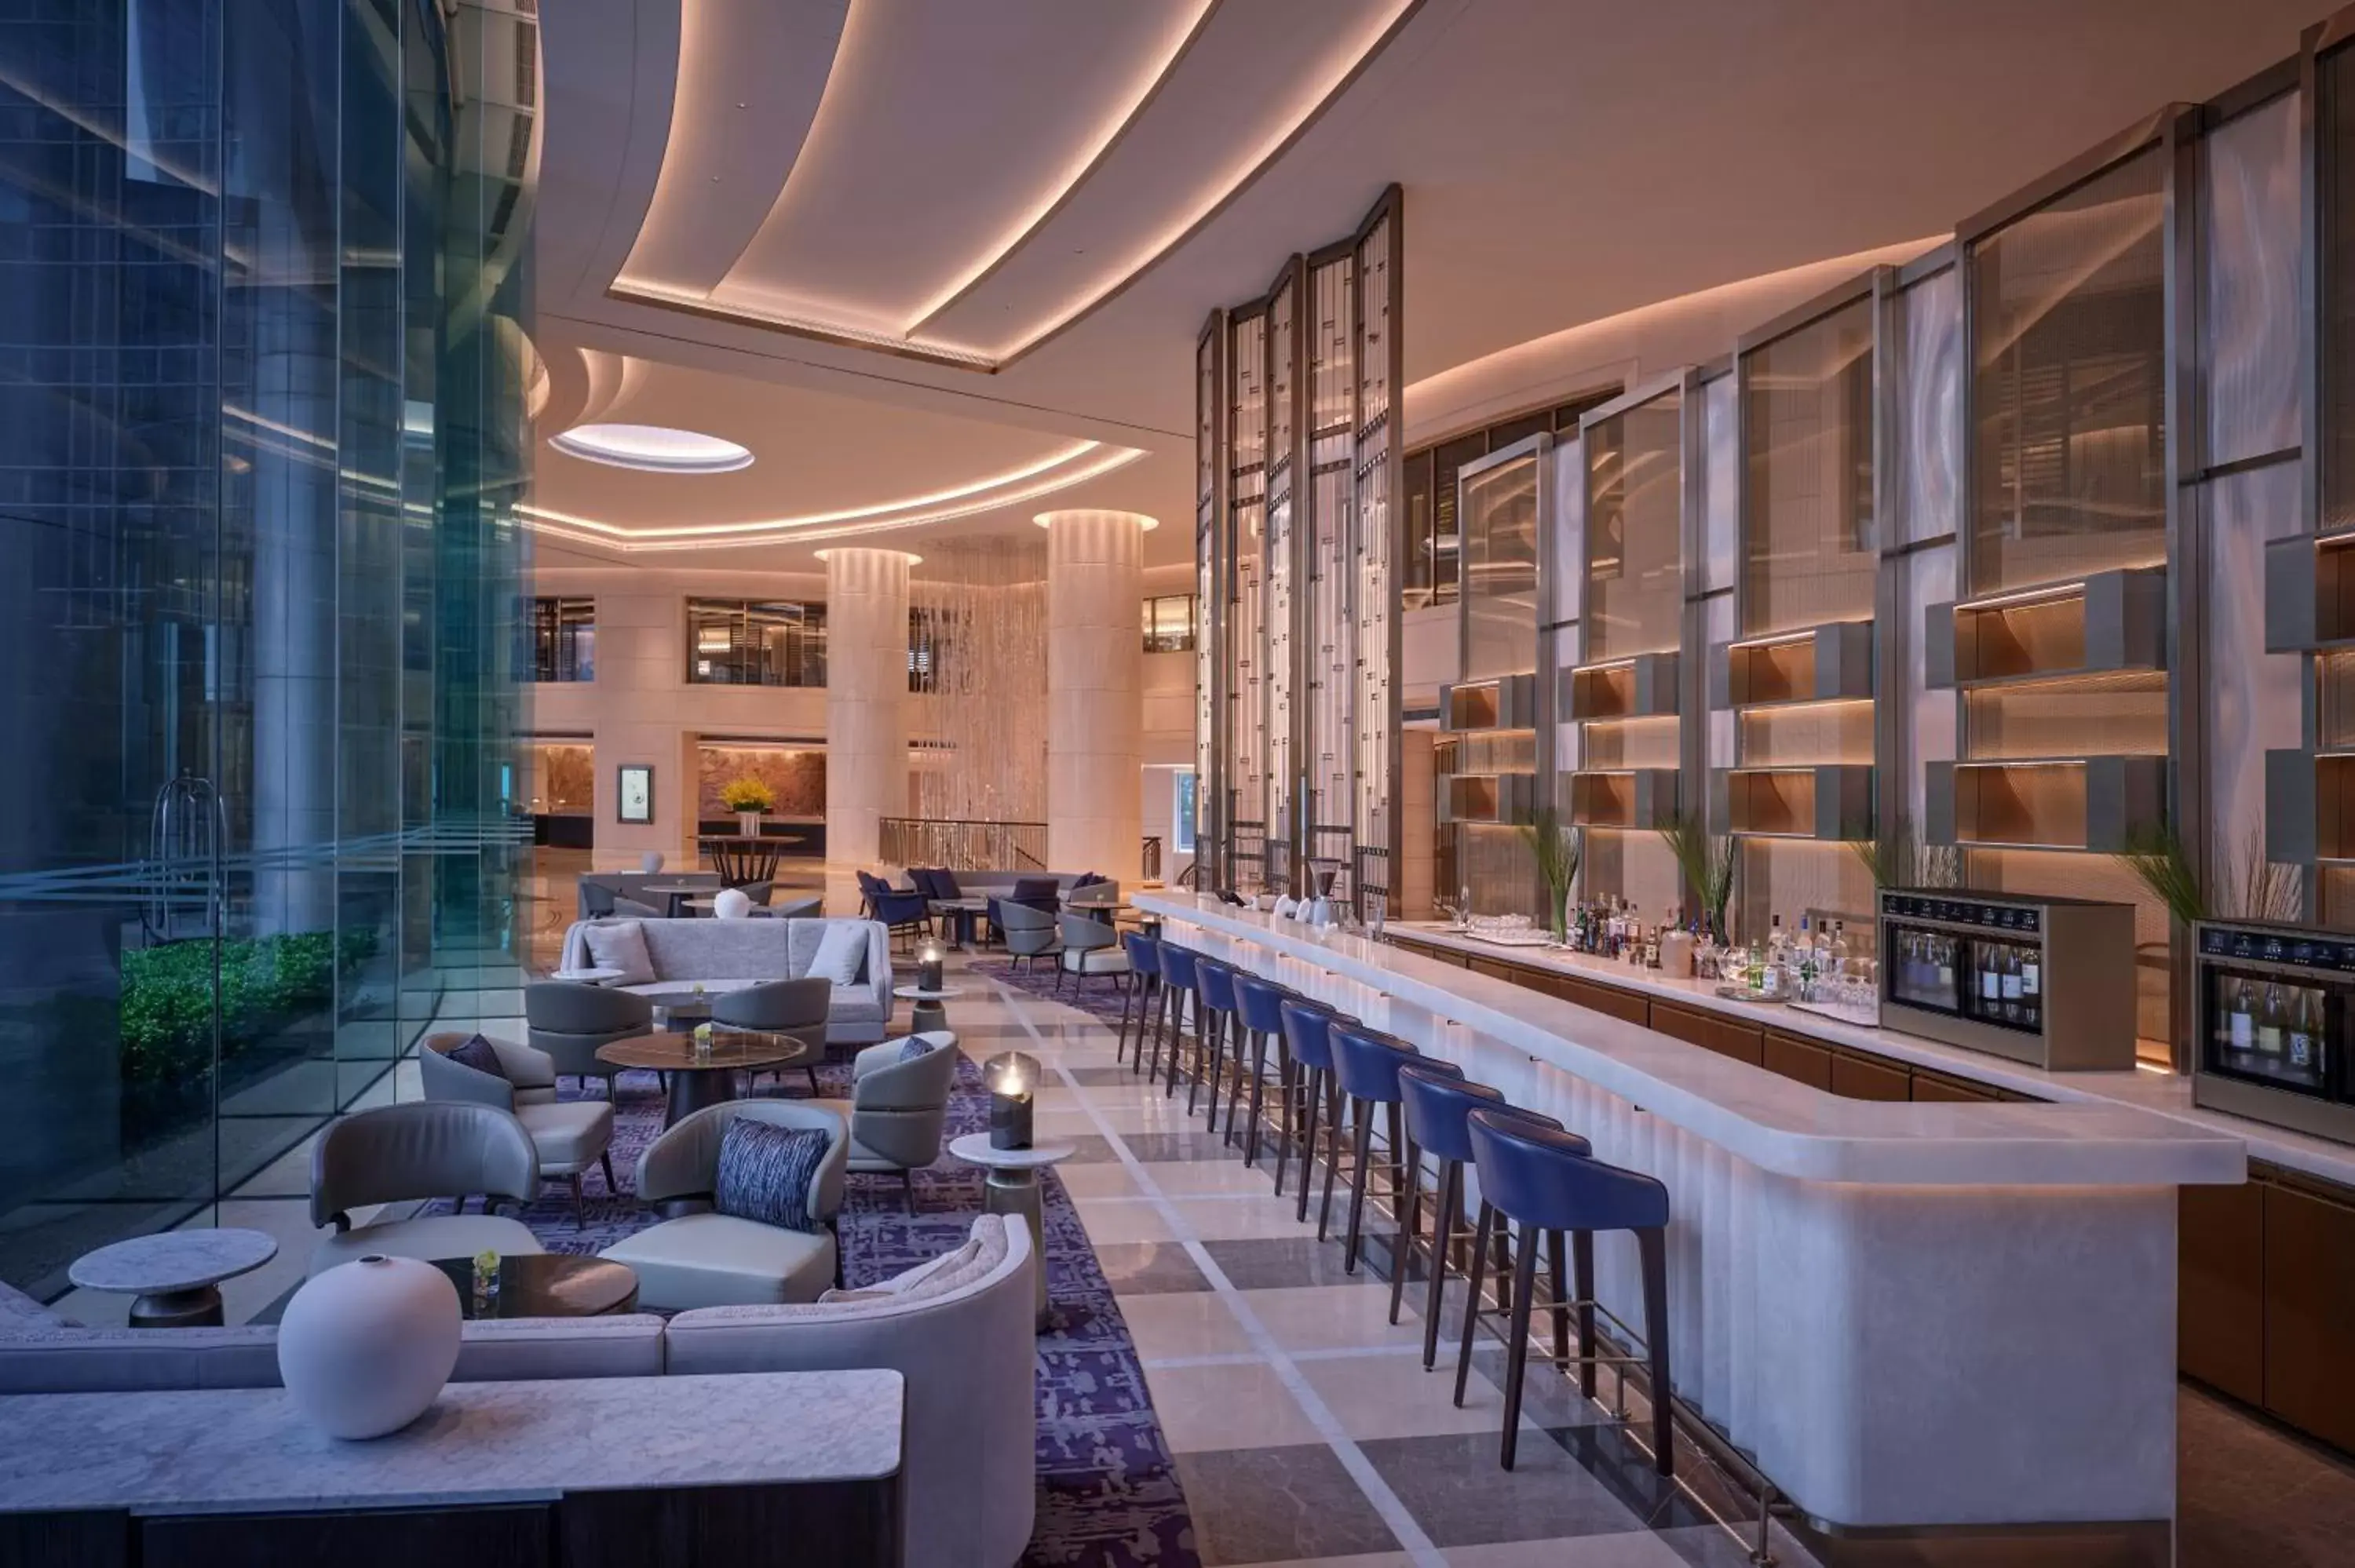 Restaurant/places to eat, Lounge/Bar in Grand Hyatt Beijing